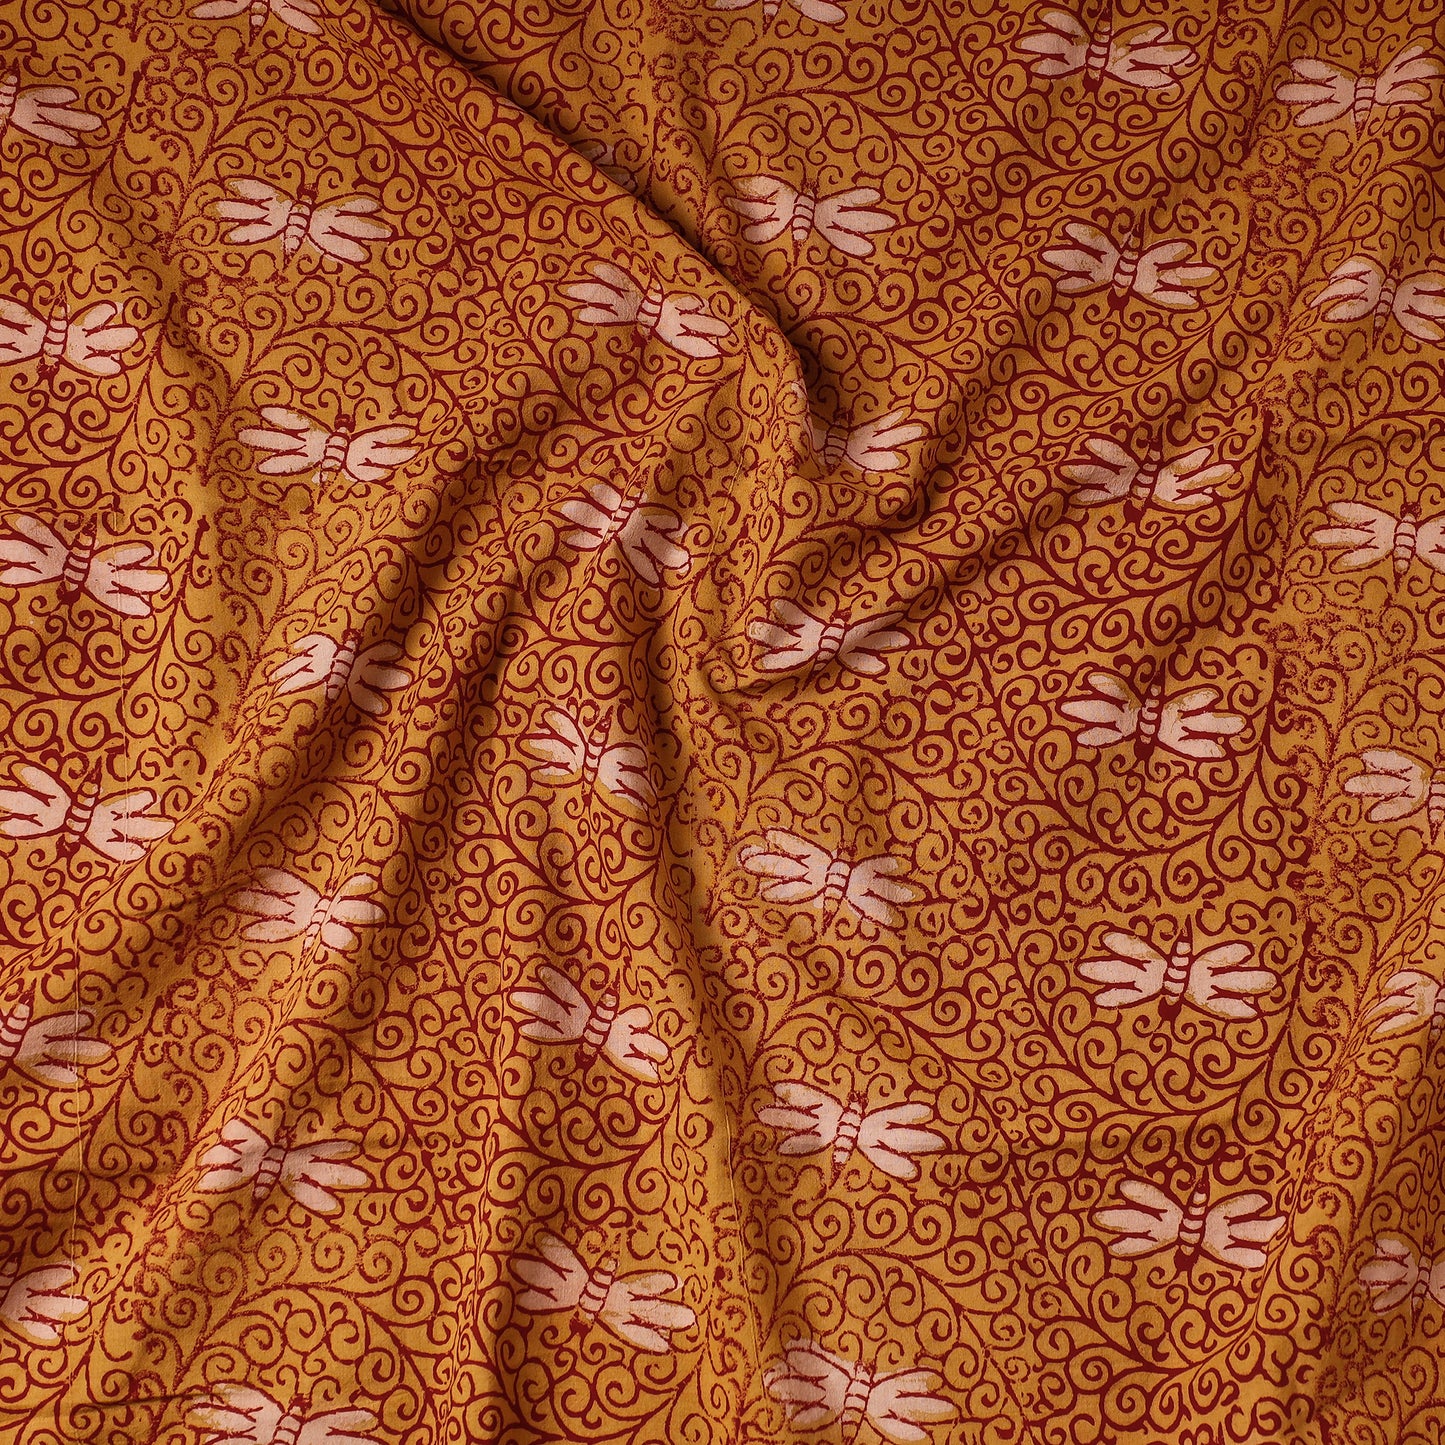 Orange - Bindaas Block Printing Natural Dyed Cotton Precut Fabric (1.9 meter)